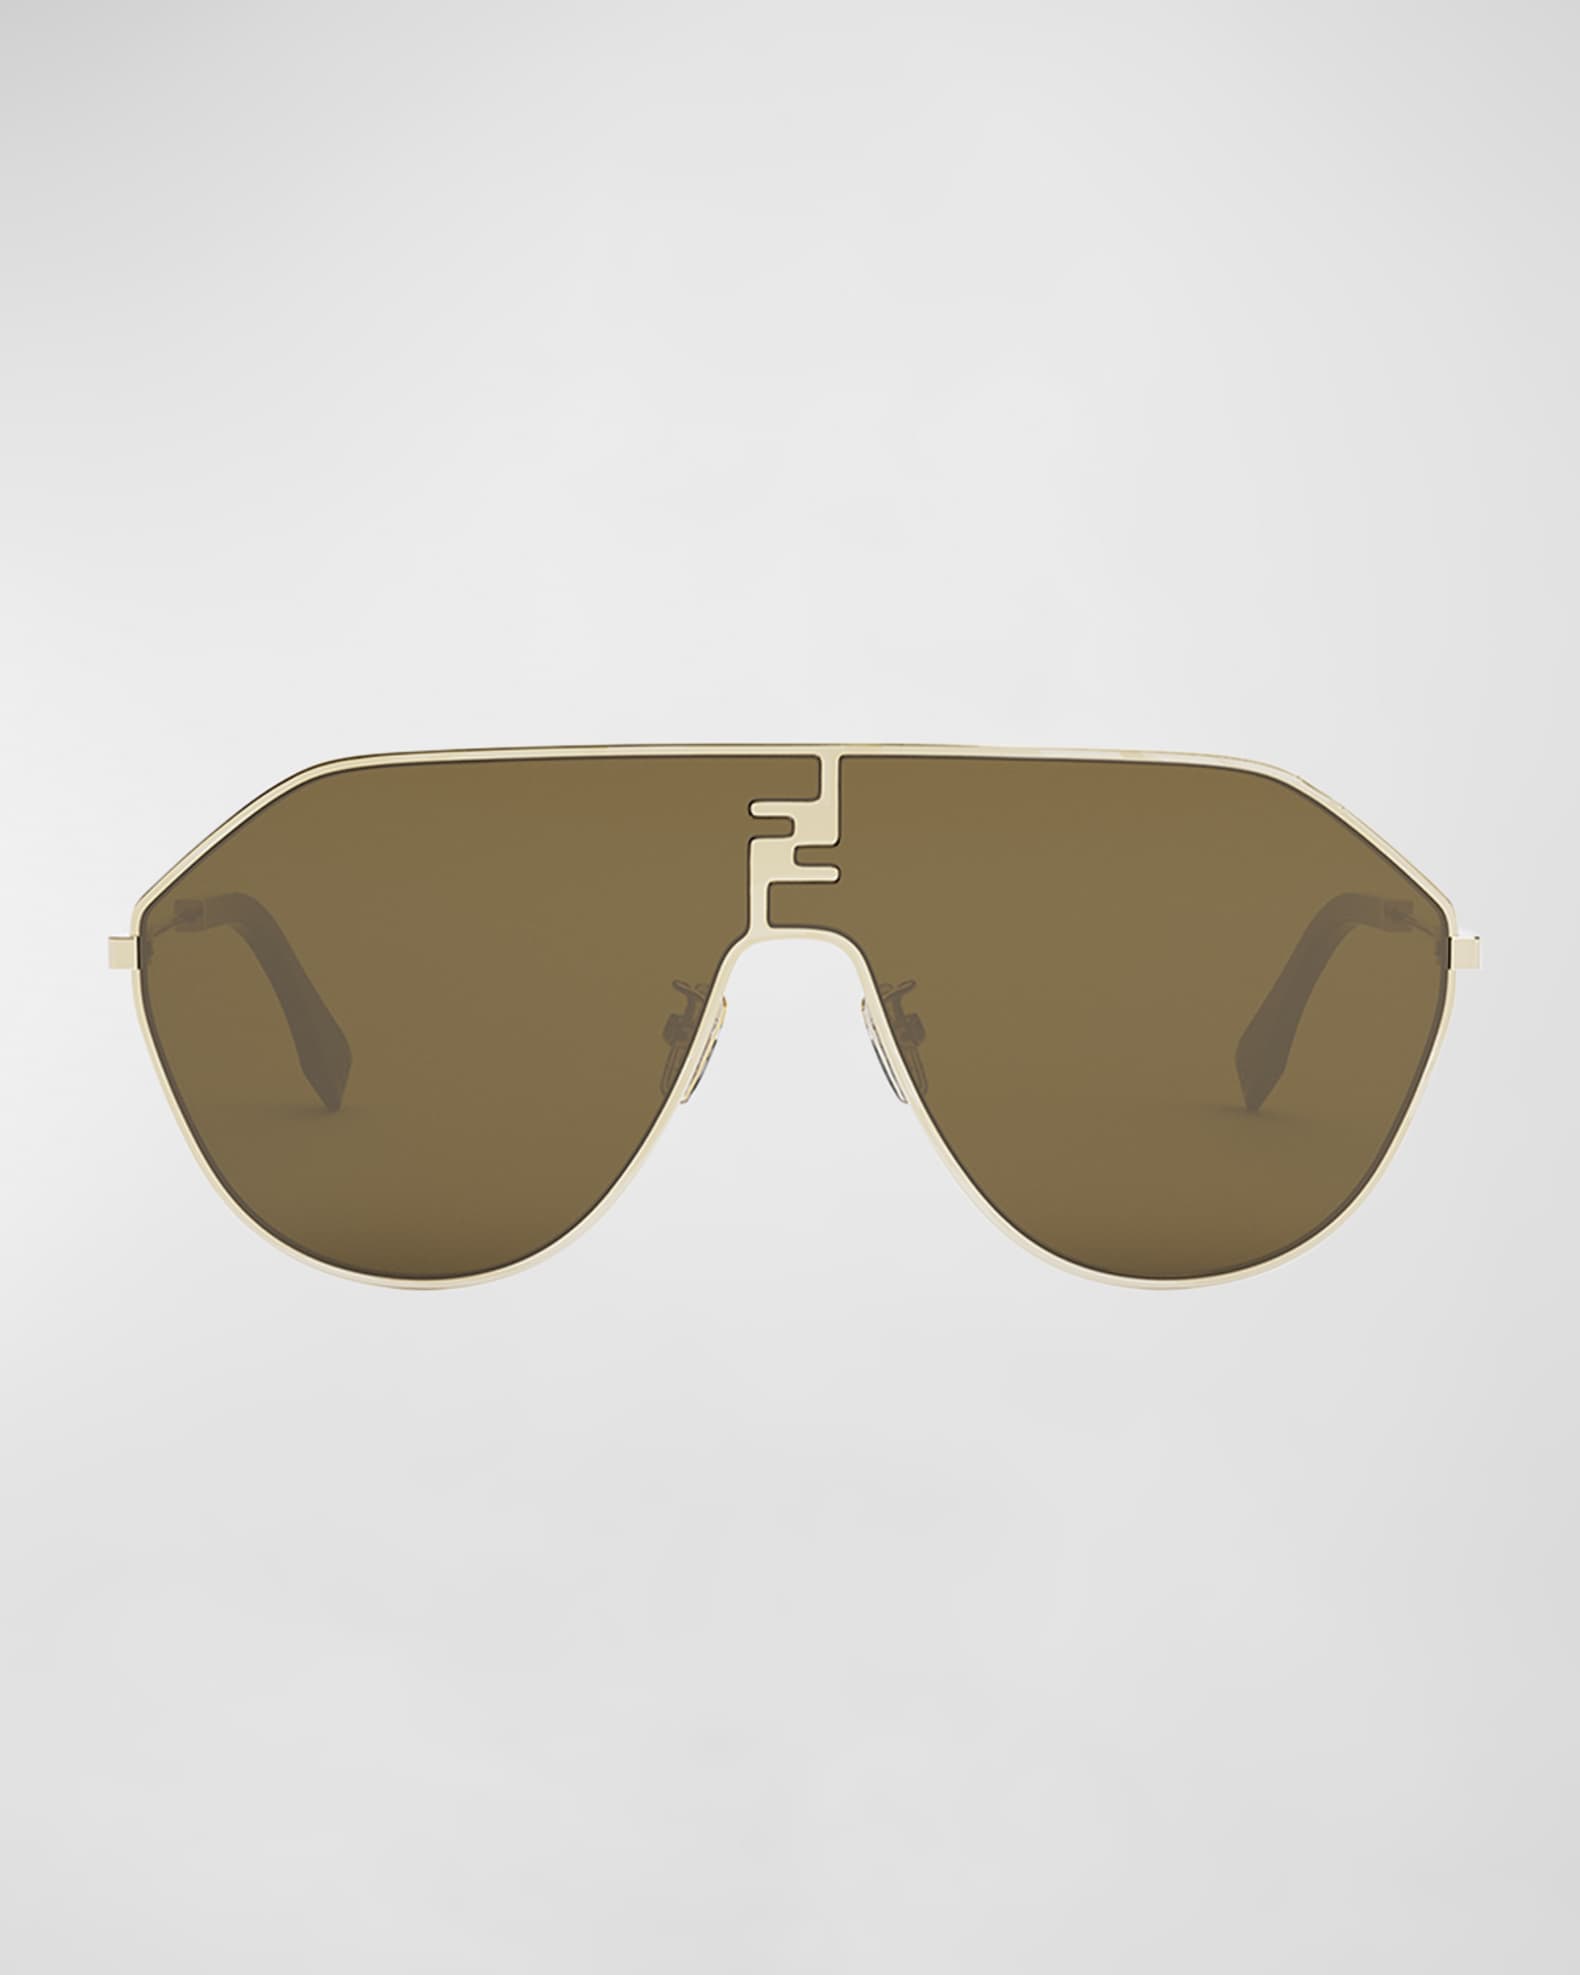 FF Match Aviator Sunglasses in Gold - Fendi